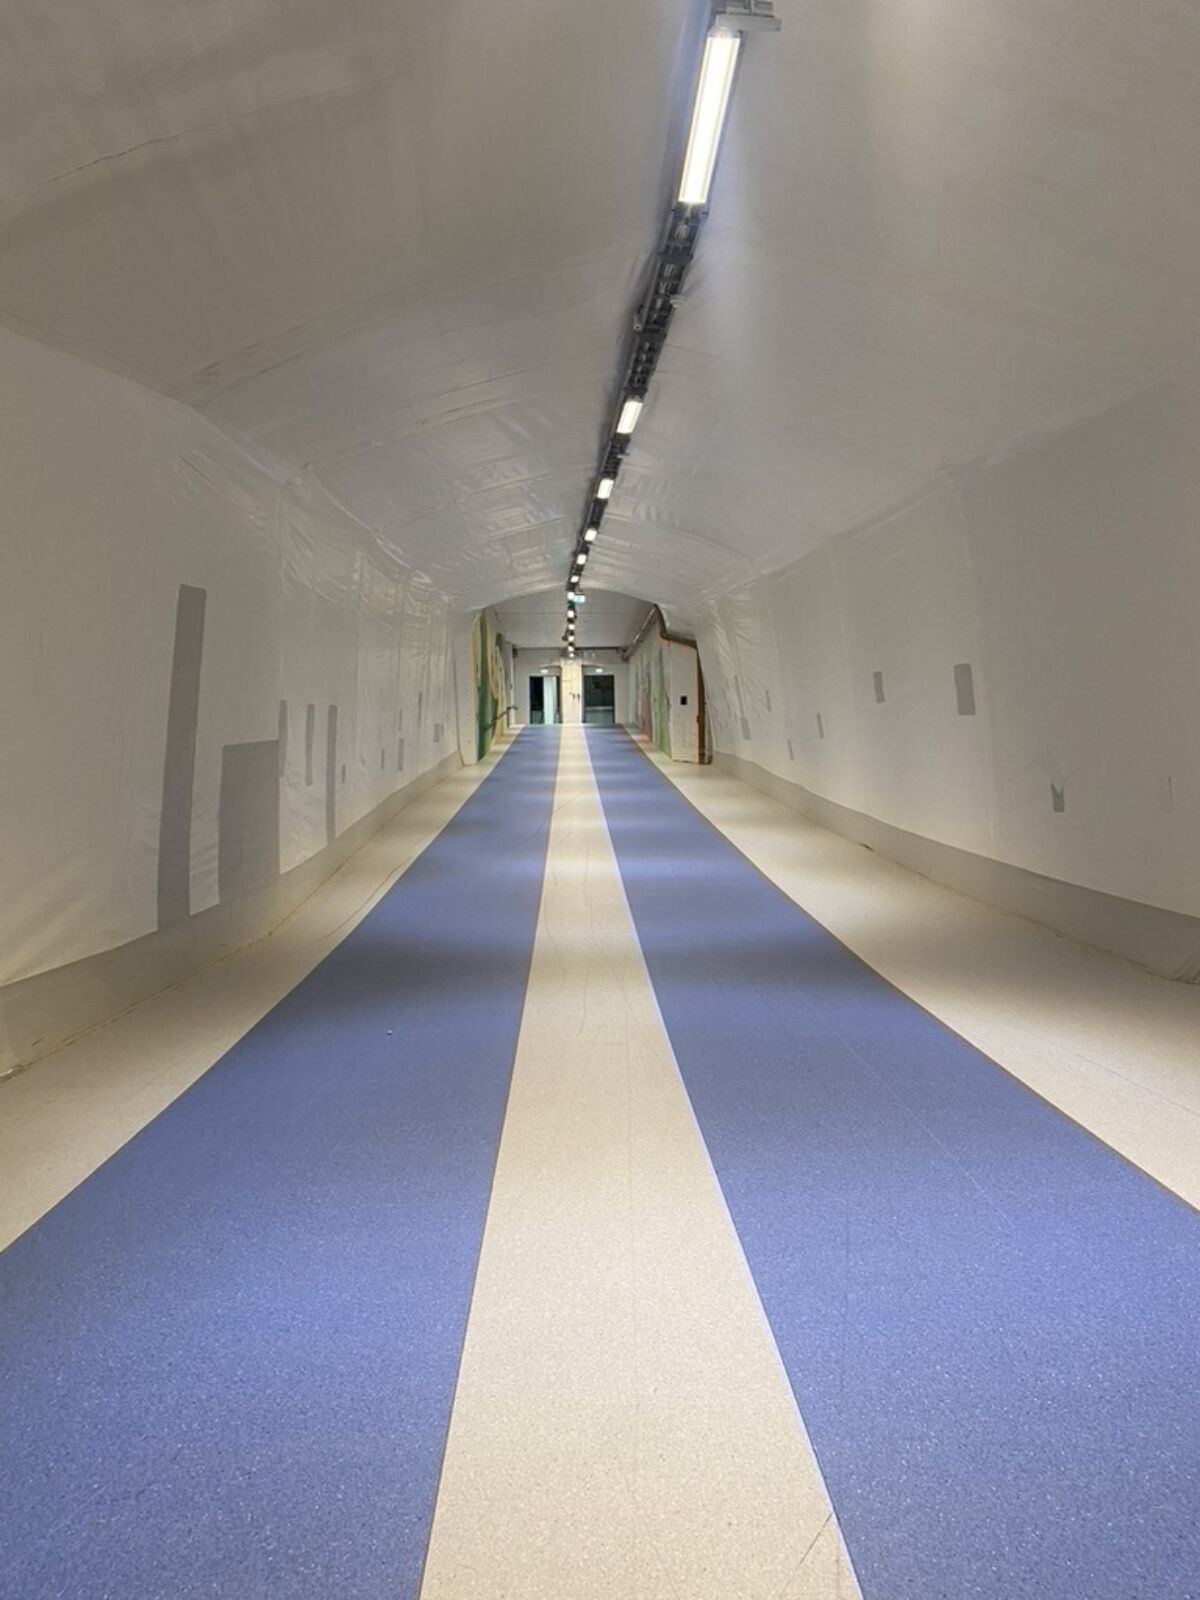 En lang korridor i idrettshall, to blå løpestriper på gulvet. Foto.